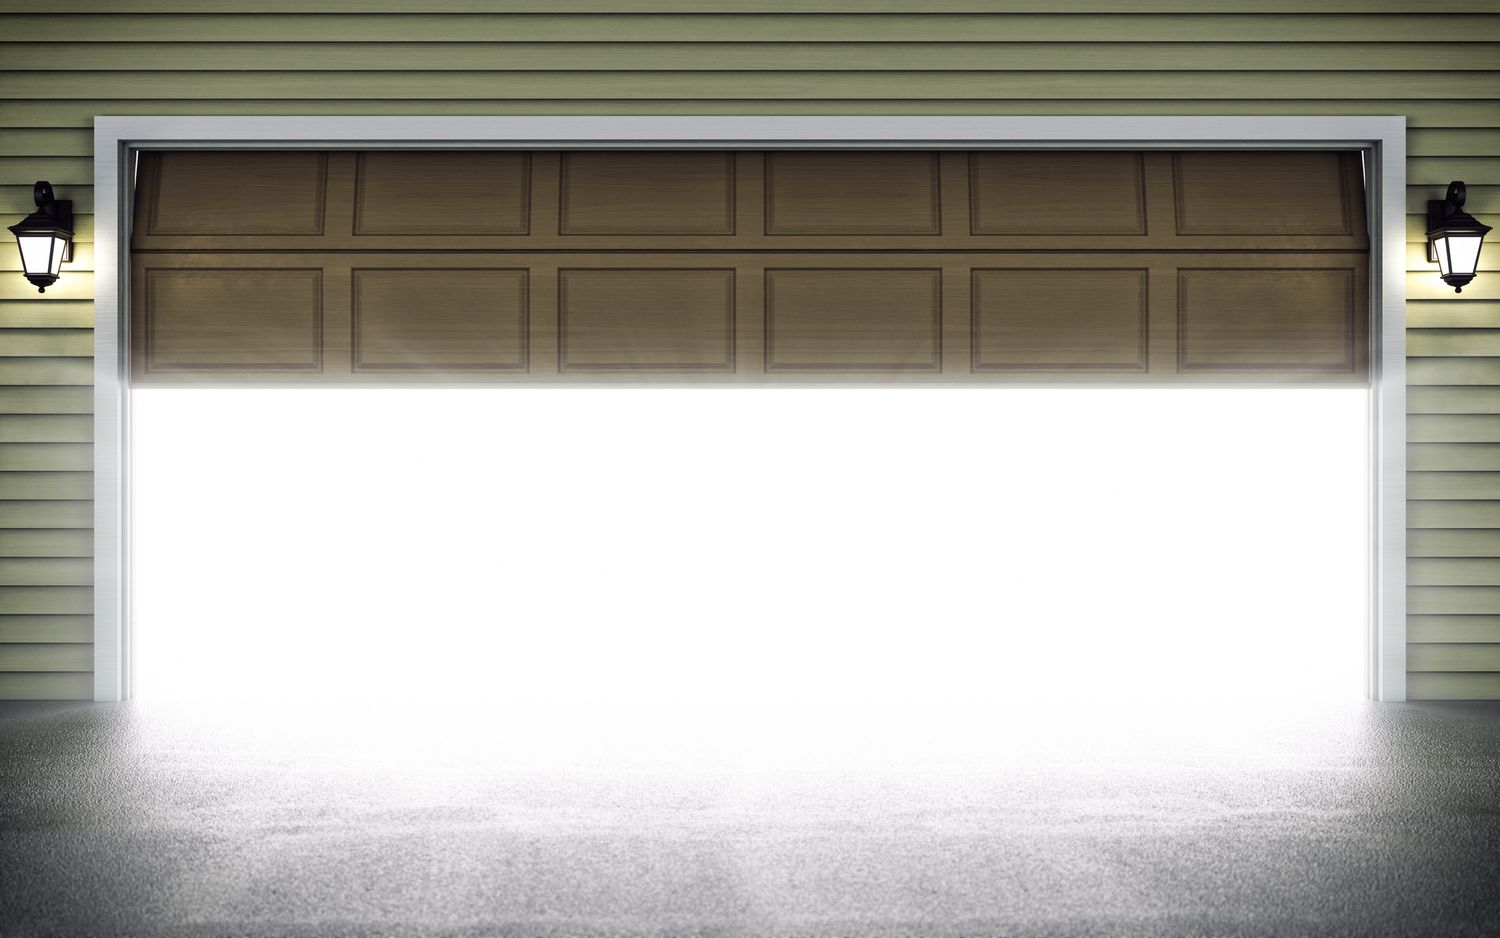 What Does Leaving Your Garage Door Half Open Mean